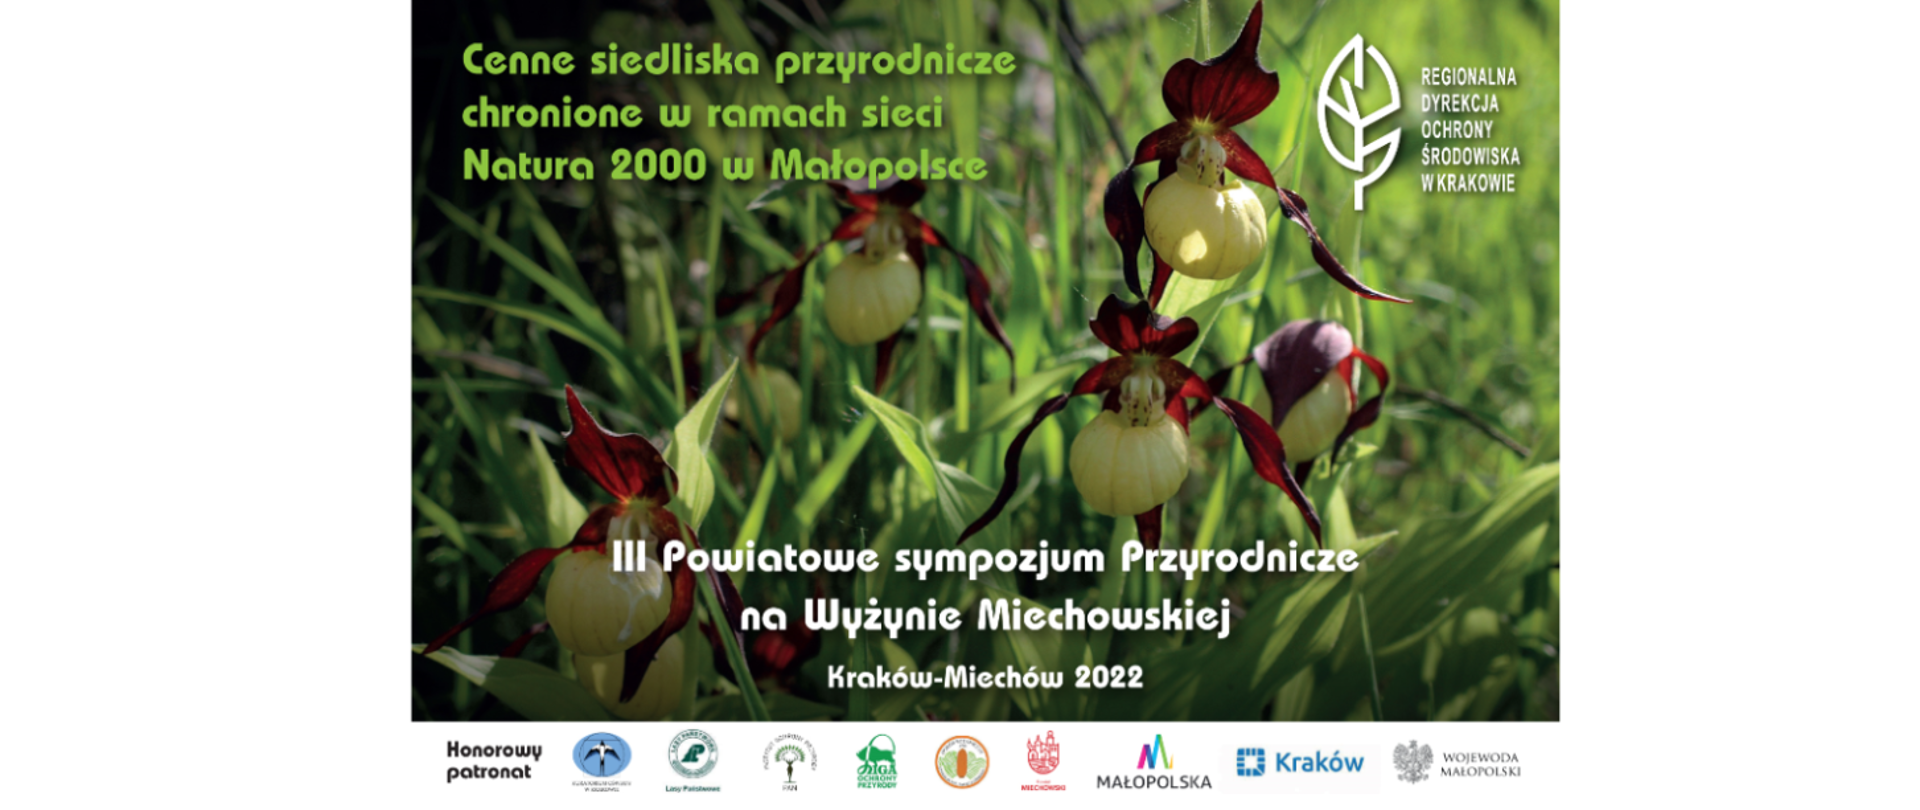 Plakat Cenne siedliska przyrodnicze chronione w ramach sieci Natura 2000 w Małopolsce. Zdjęcie obuwika pospolitego